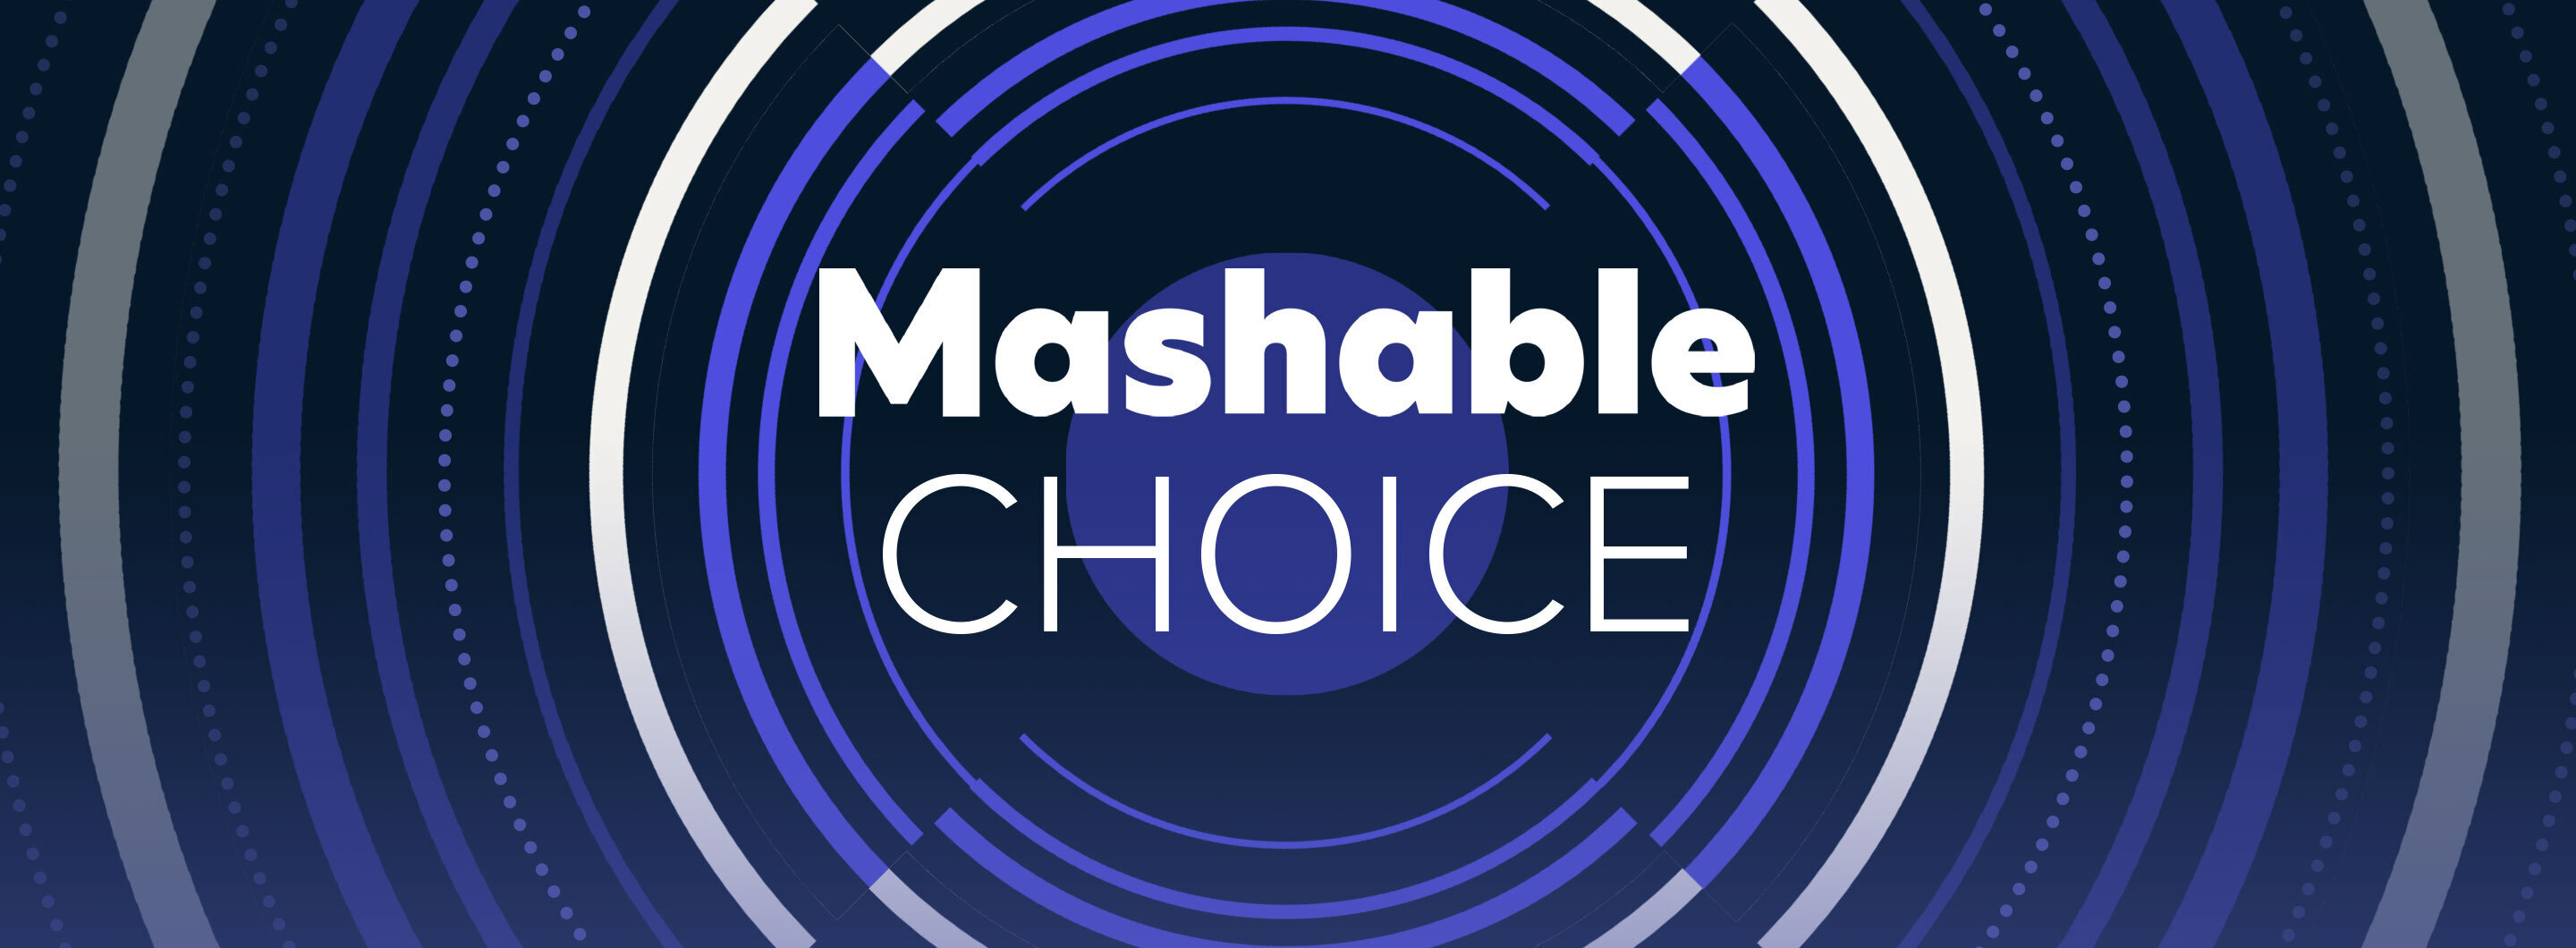 Mashable Choice